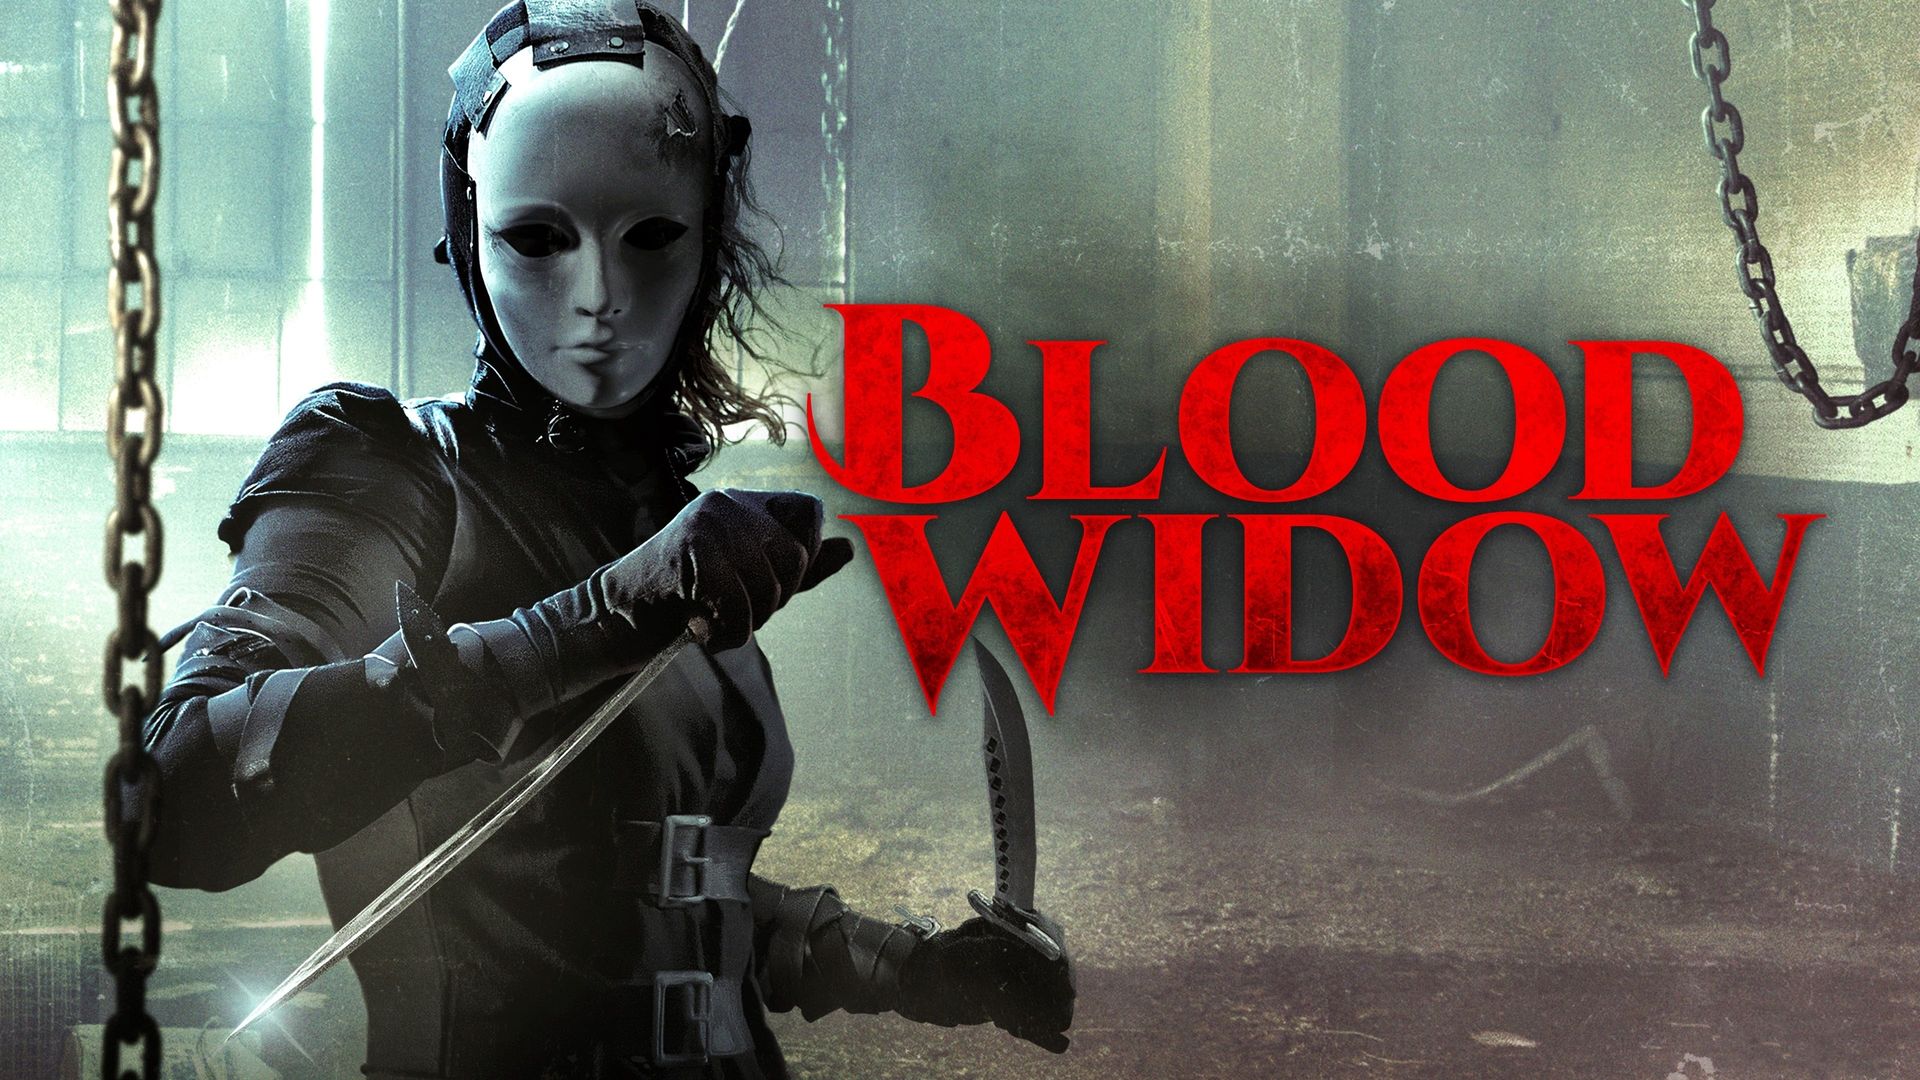 Blood Widow background